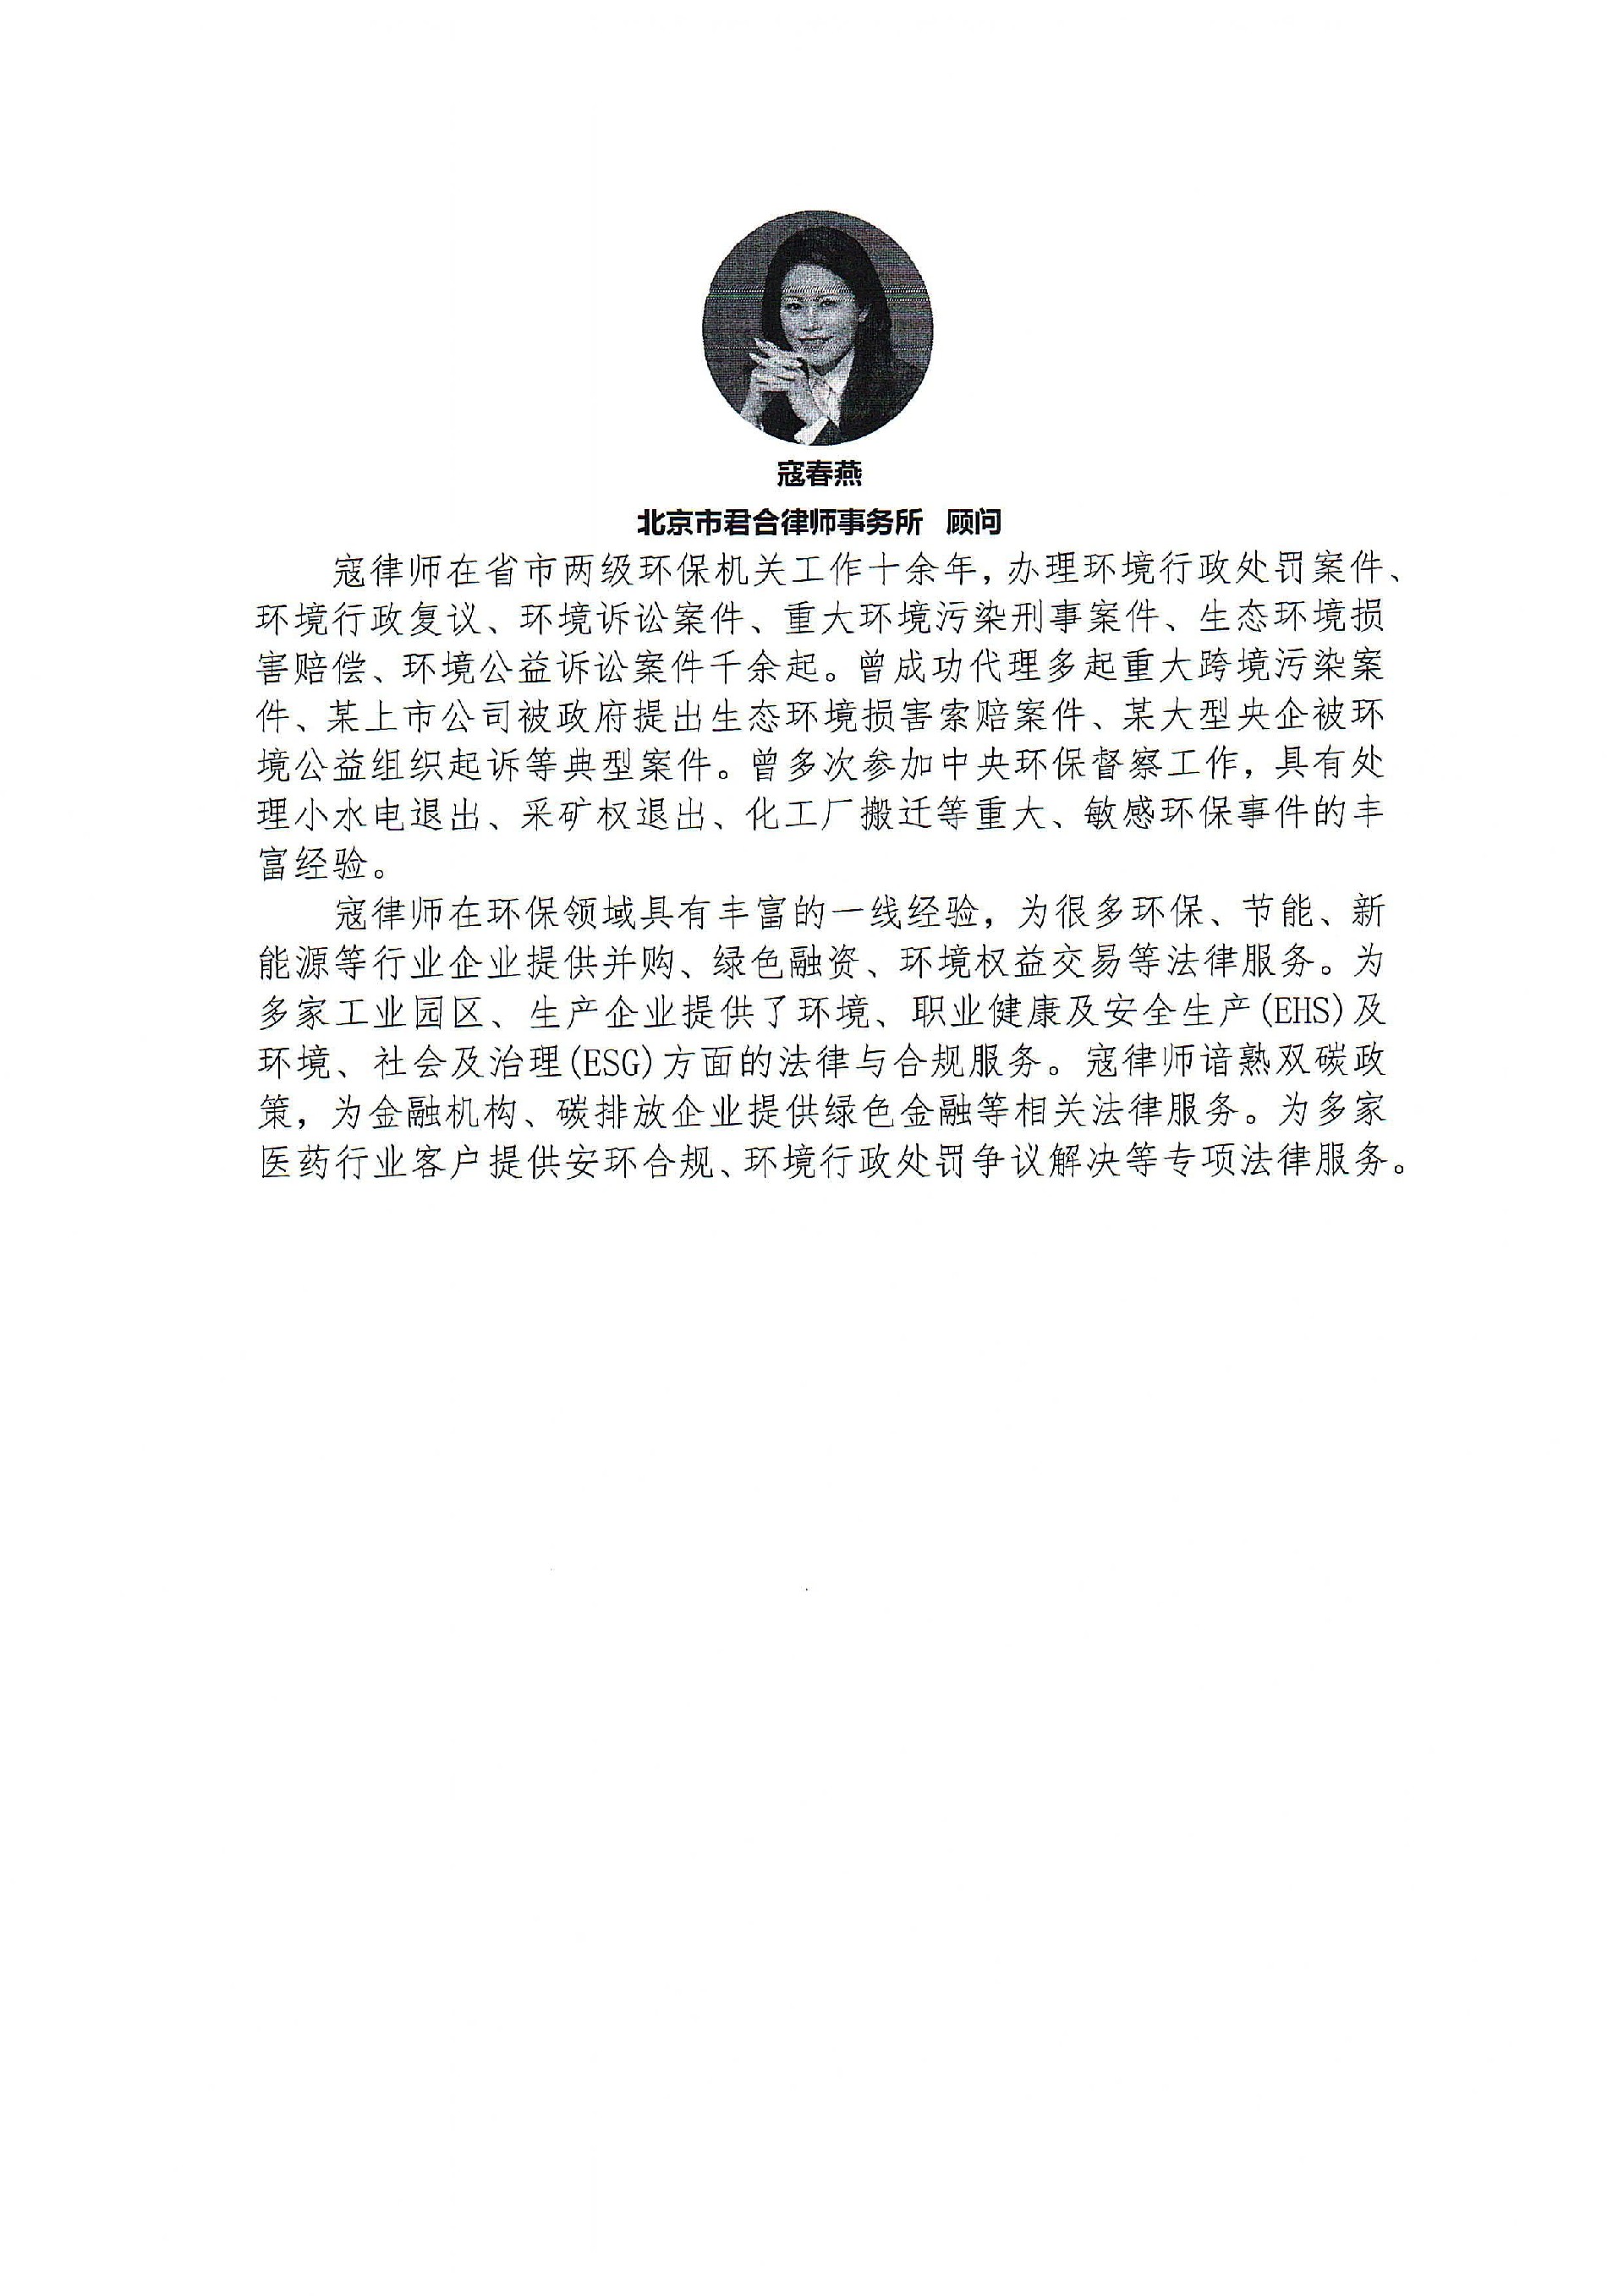 四川省医药行业协会关于召开2023版新公司及其他热点法律问题解析活动的通知_05.jpg